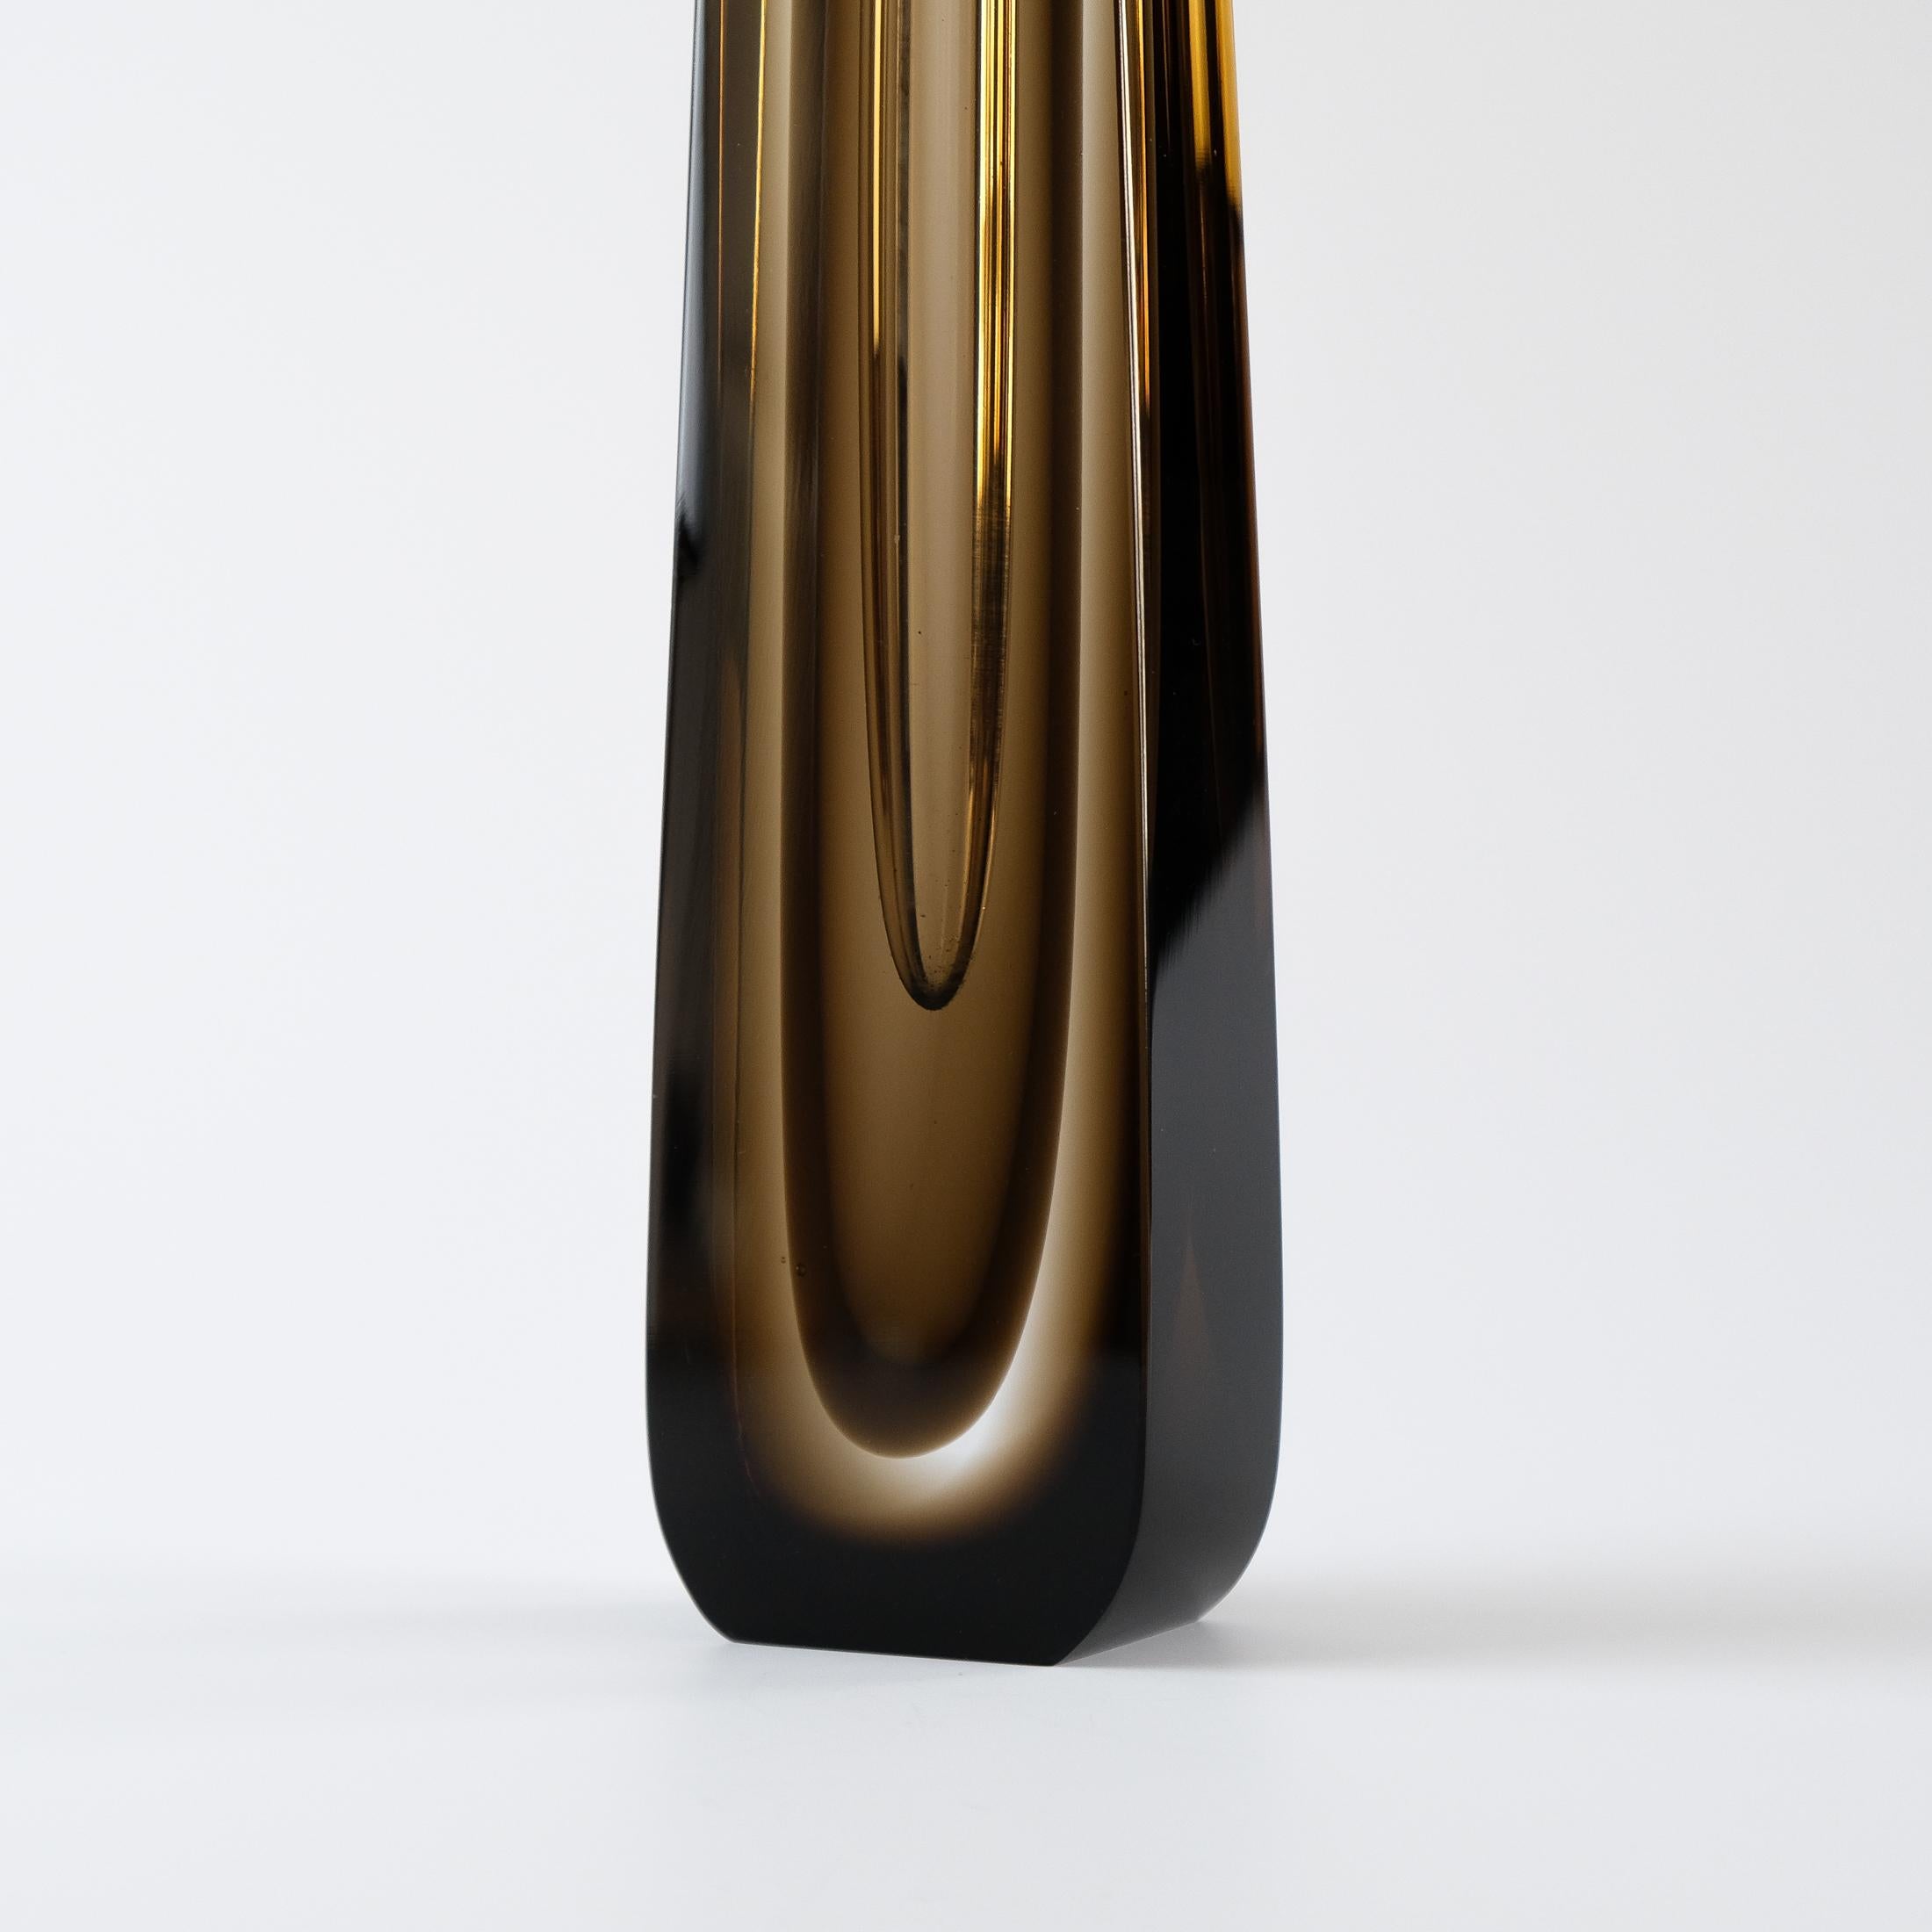 Pavel Hlava Cased & Cut Glass Vase For Novy Bor Exbor, Czechoslovakia c.1960s For Sale 1